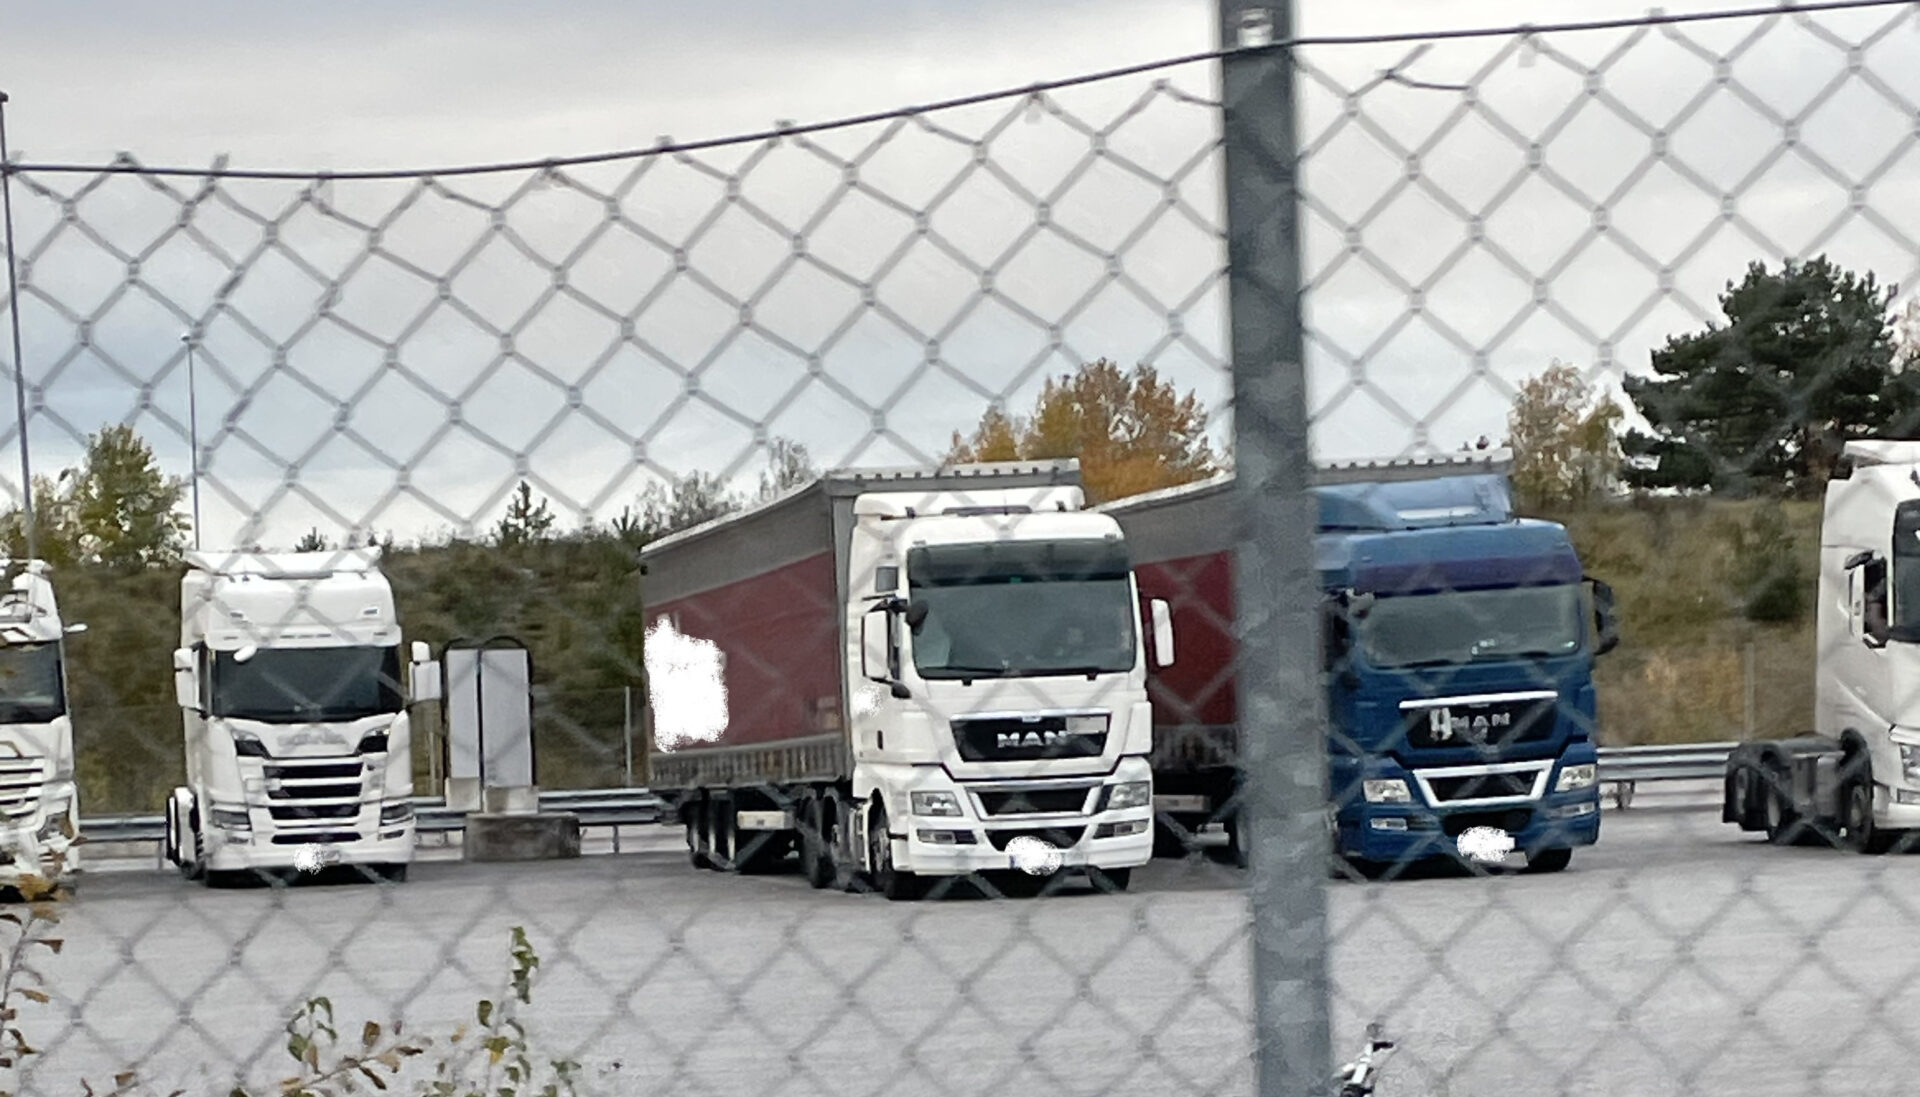 Atrans dragbilar står med tillkopplade trailers inne på Eskilstunas kombiterminal, men ingen rullar ut - i alla fall inte så länge polisen finns på plats.